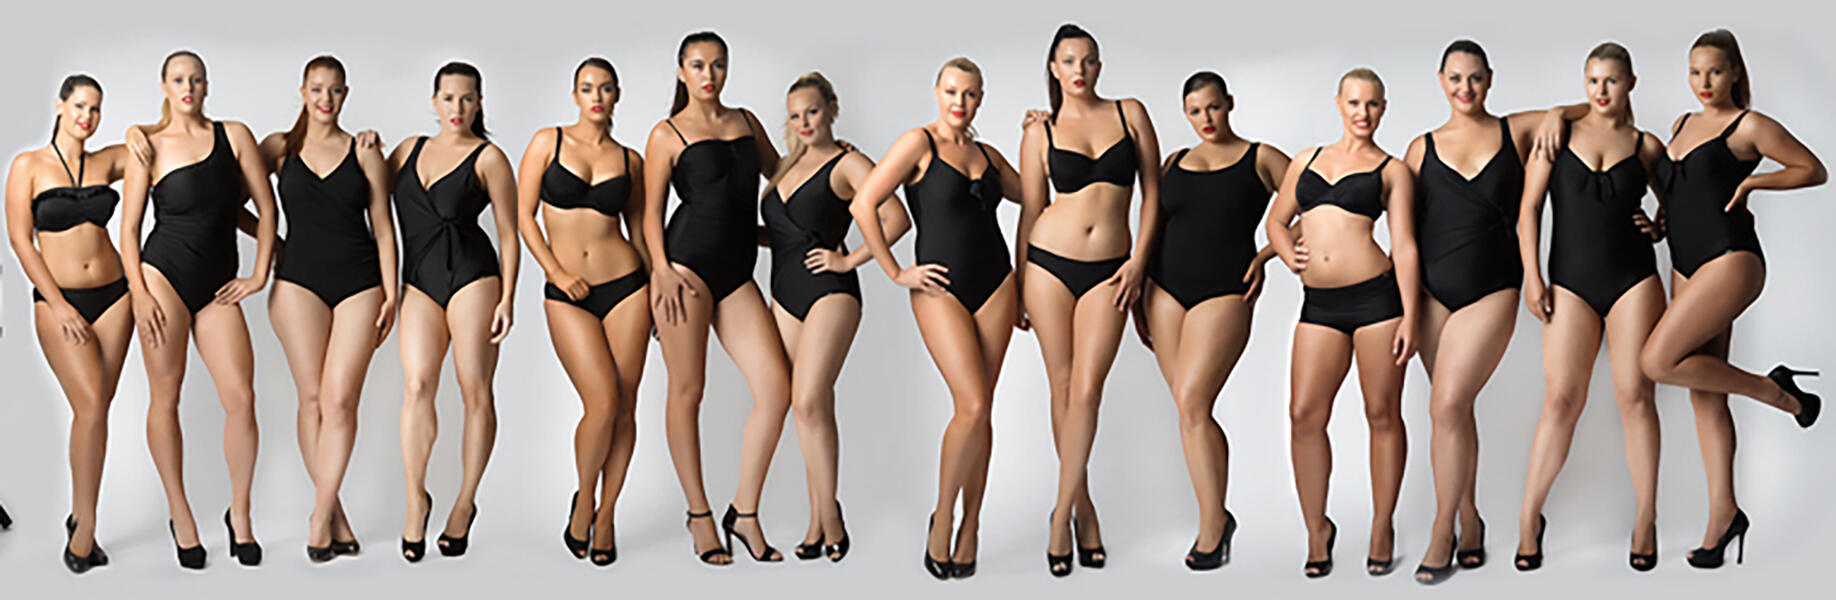 Разных размеров. Женщины разной комплекции. Разные фигуры девушек. Разные телосложения девушек. Девушки разных размеров.